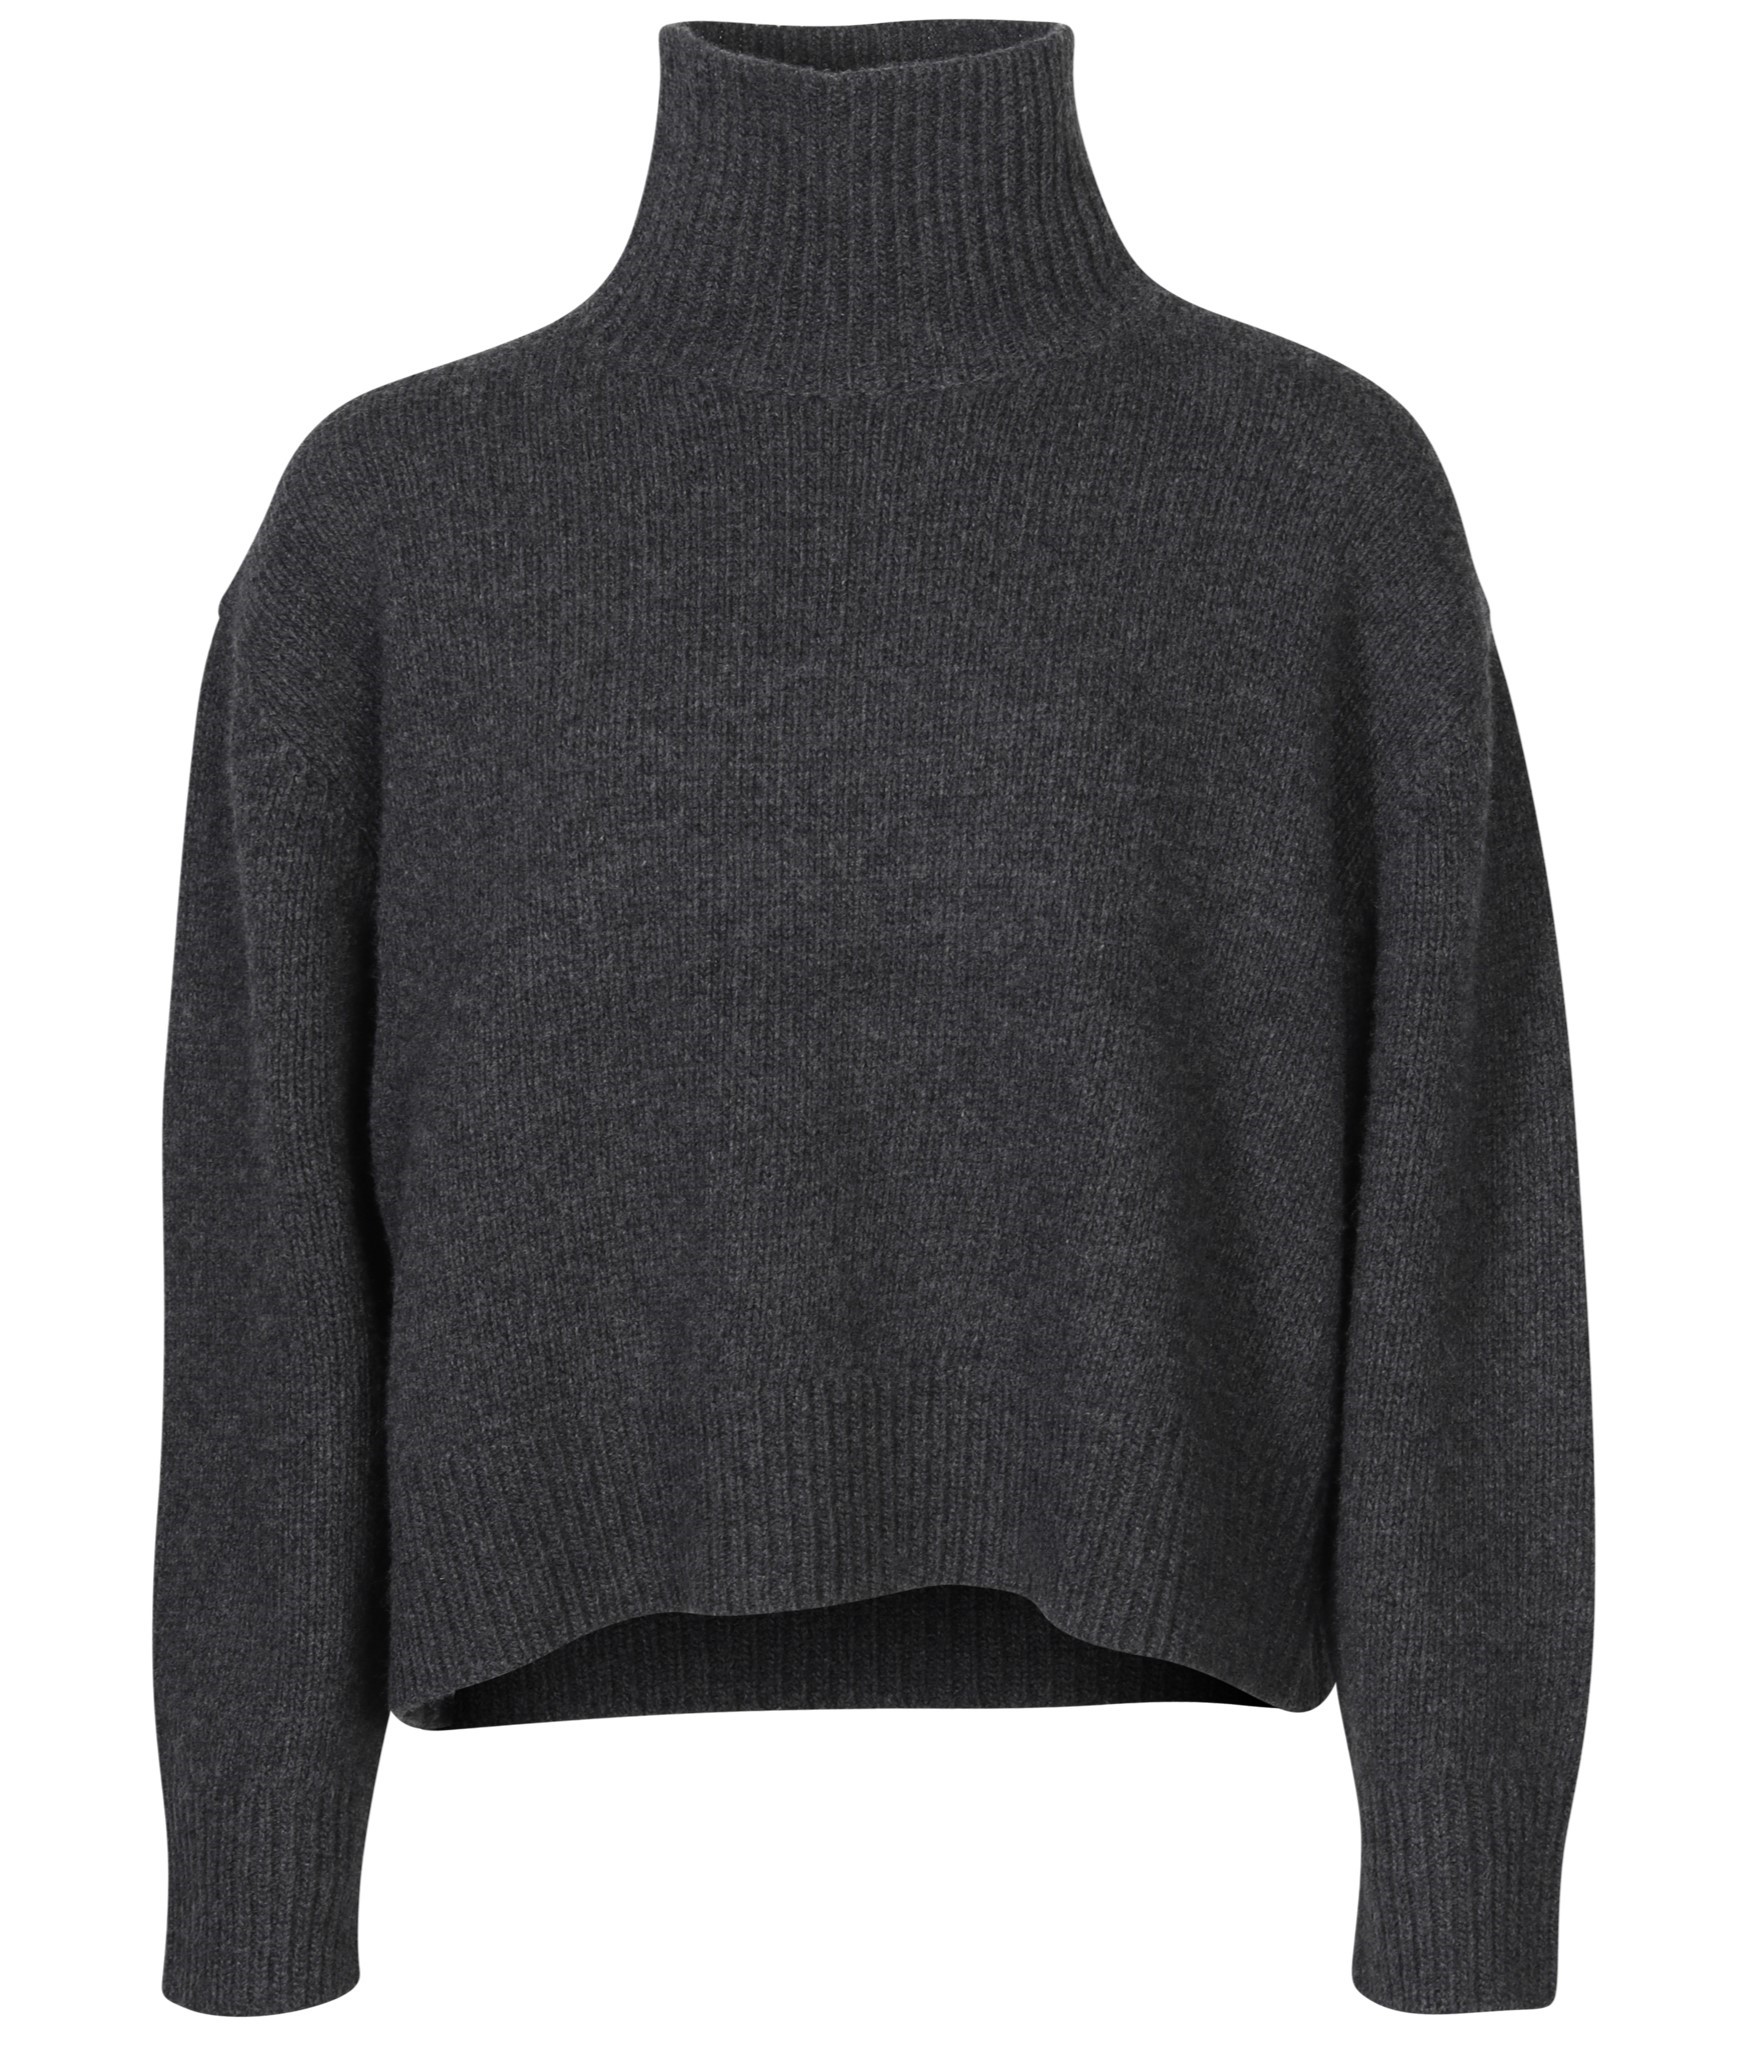 NILI LOTAN Omaira Knit Turtleneck Sweater in Dark Charcoal Melange